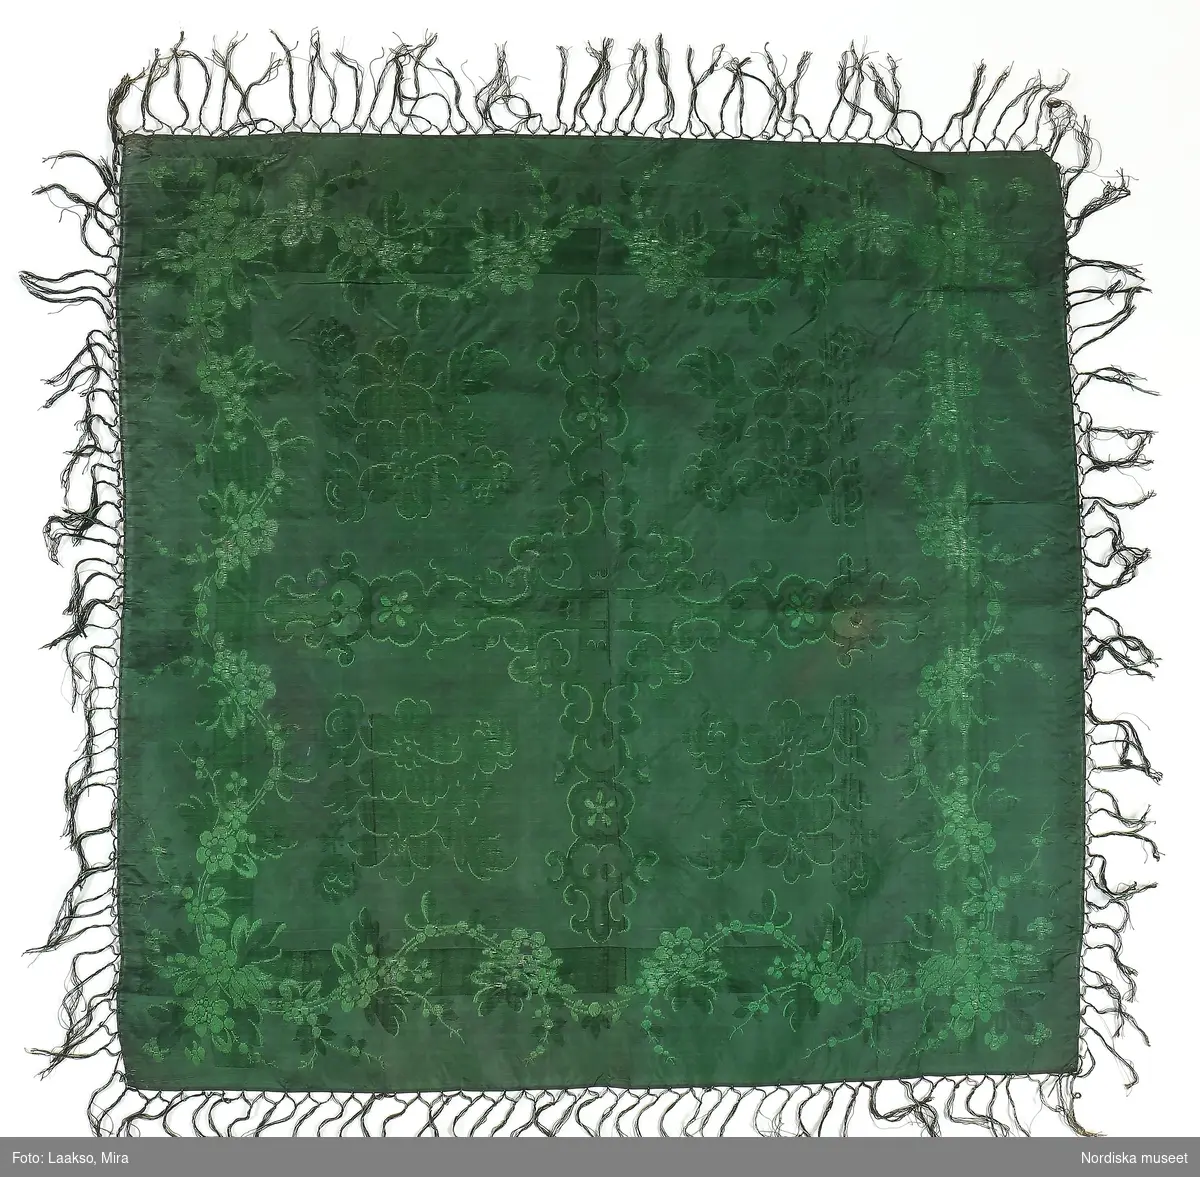 Kvadratiskt halskläde i grönsvart sidentaft med jacquardvävt mönster med inslagsflotteringar  i grönt, spegeln indelad i 4 stora rutor med ornamenterade bårder och en stor blombukett i varje ruta. Runt kanten blomslinga. Tvåknuten frans av tvinnat silke i 2 gröna nyanser.
Likadant halskläde i andra färger se 148 963 från Ilsbo, som är hallstämplat i Stockholm
/Berit Eldvik 2011-11-10